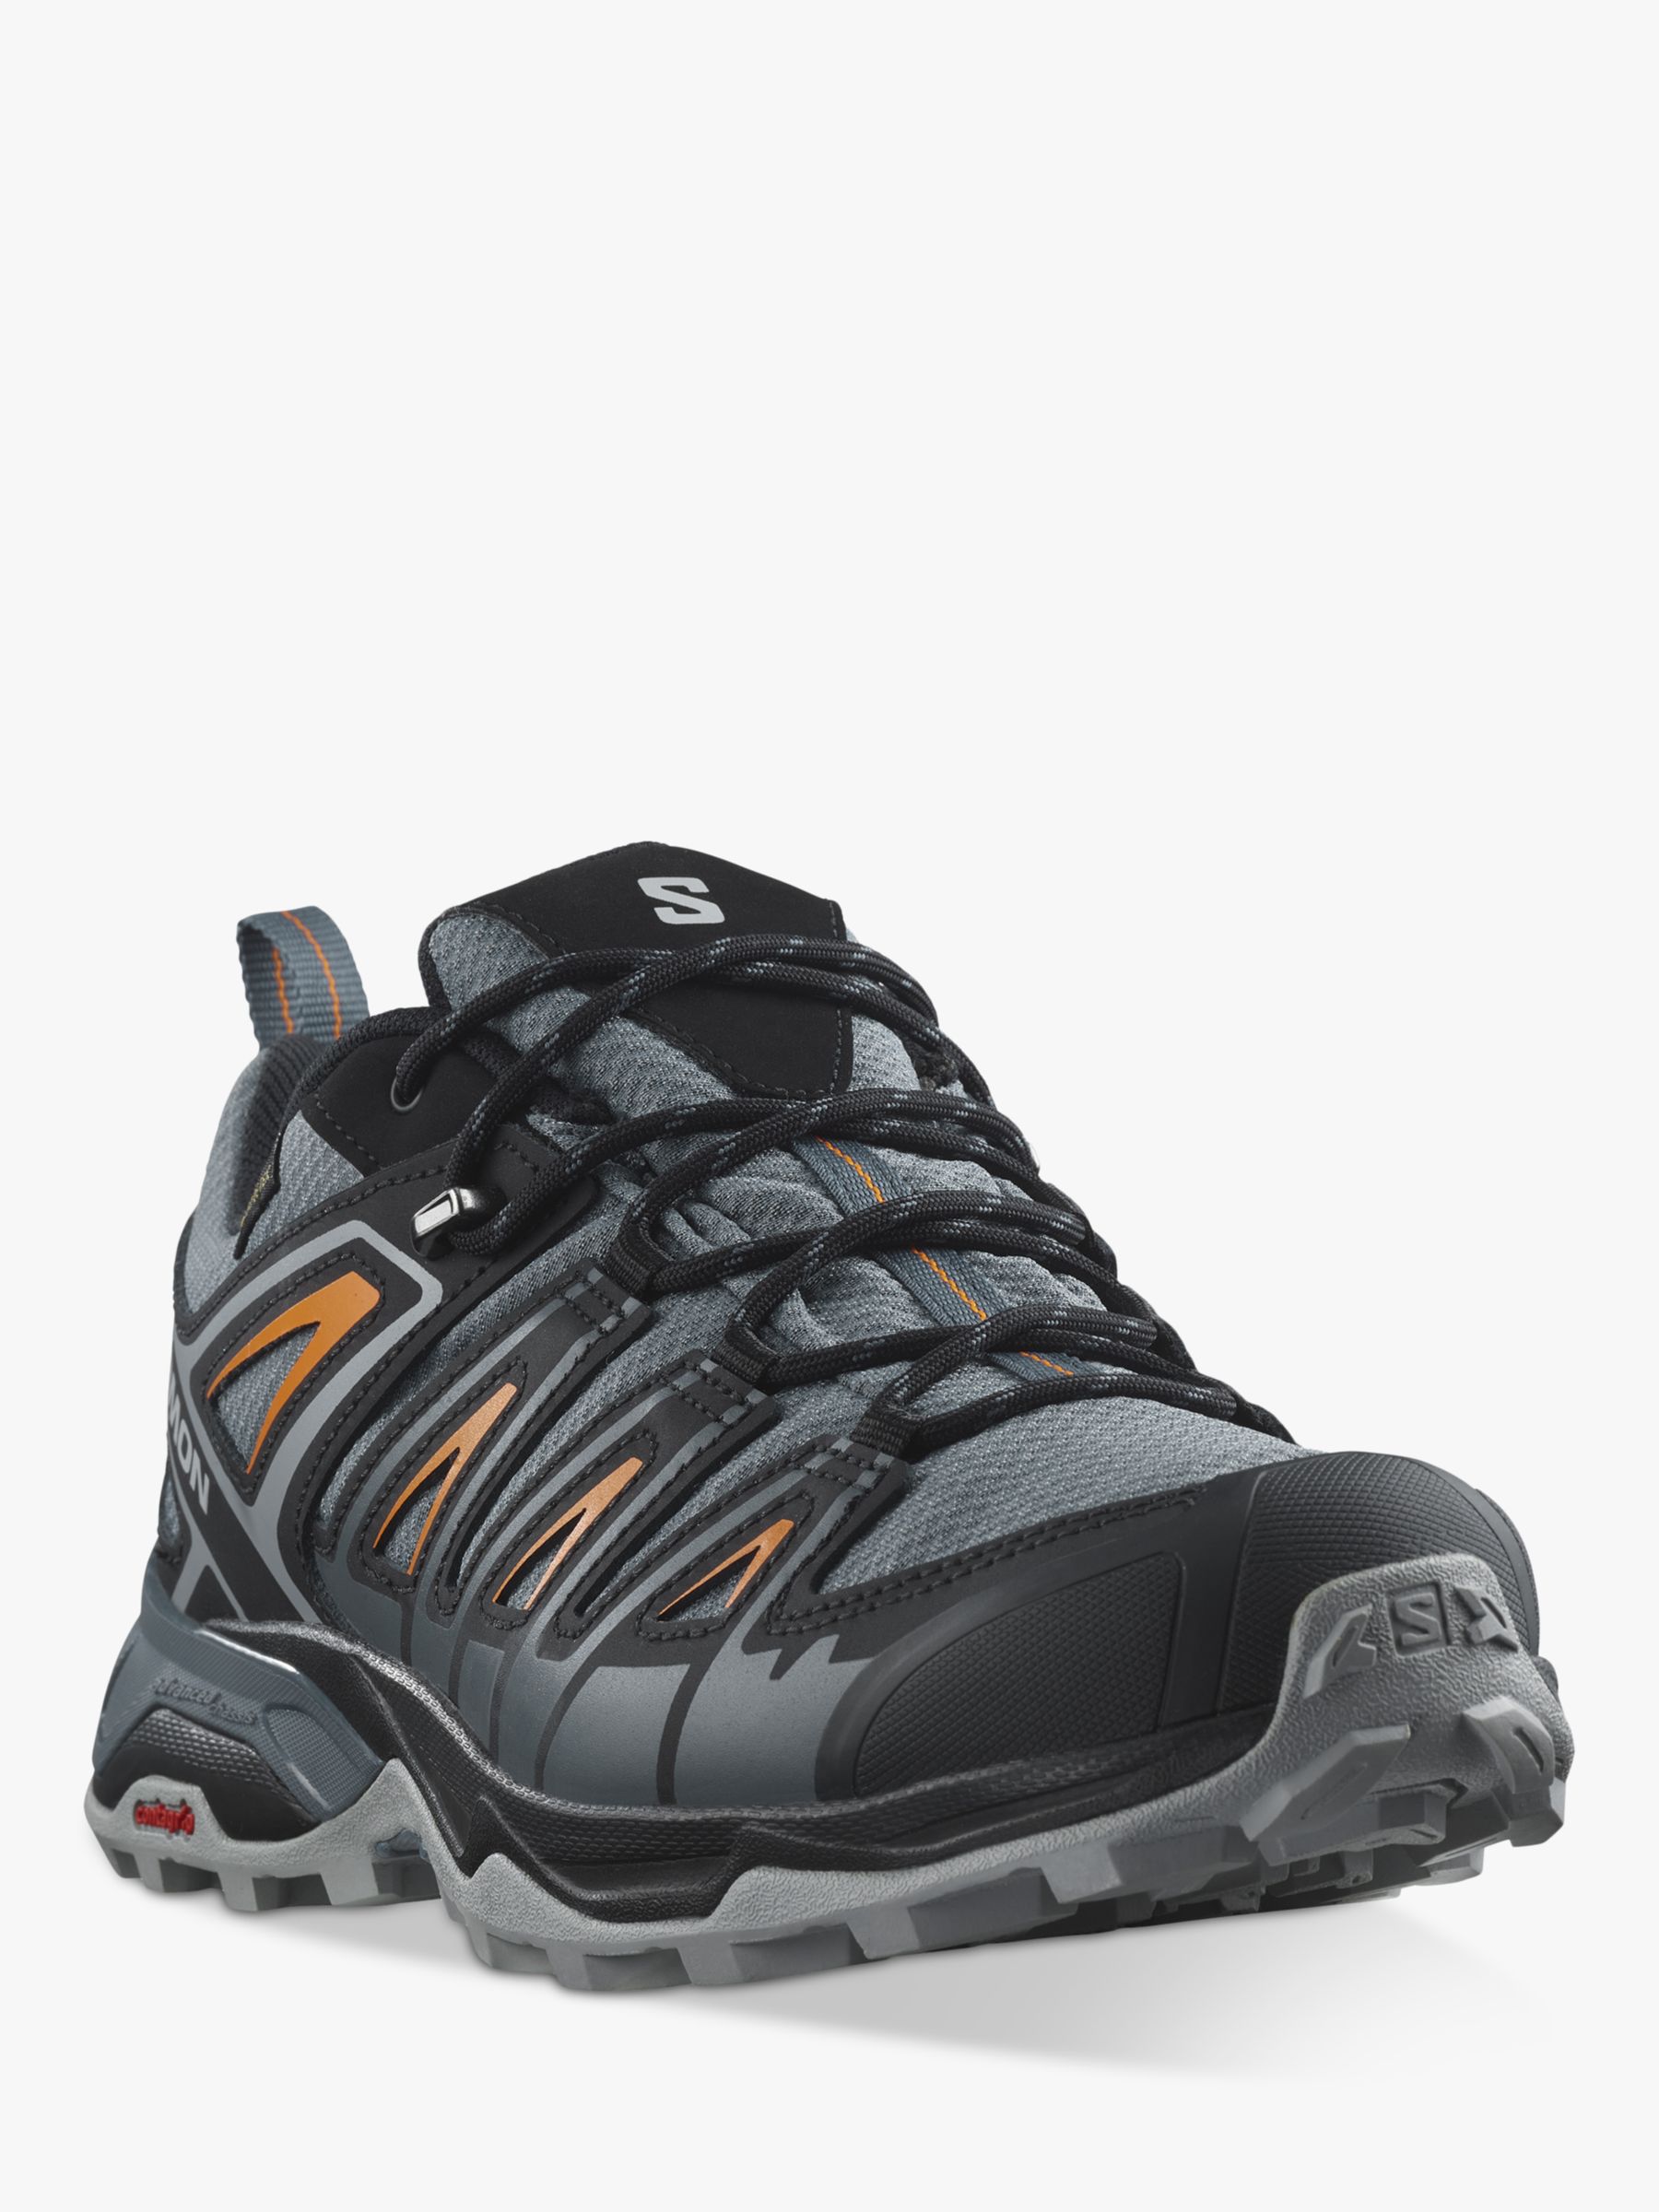 Salomon X Ultra Pioneer Men's Waterproof Gore-Tex Hiking Shoes, Black ...